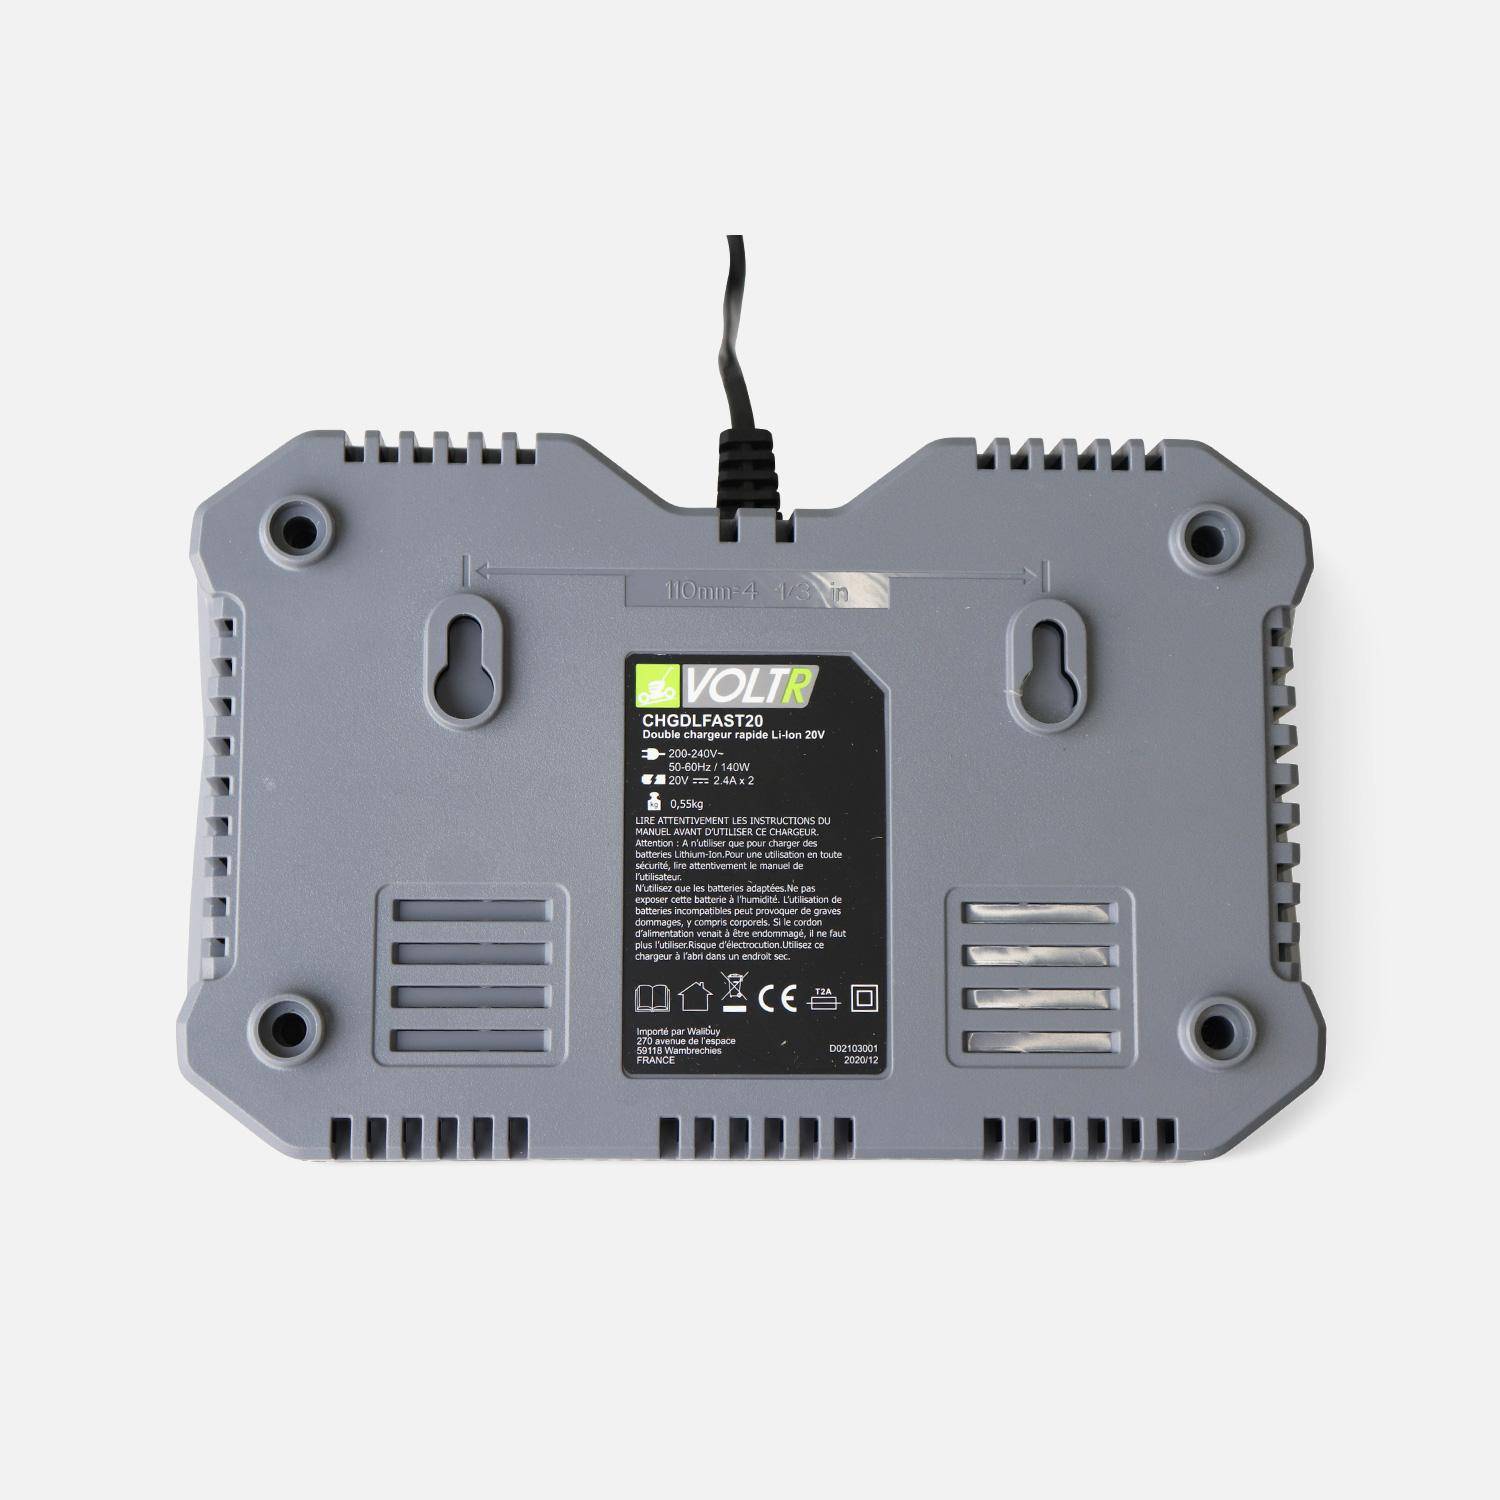 VOLTR 20V – Doble cargador rápido – Cargador para batería 20V herramienta inalámbrico VOLTR, doble cargador con indicador luminoso,sweeek,Photo2